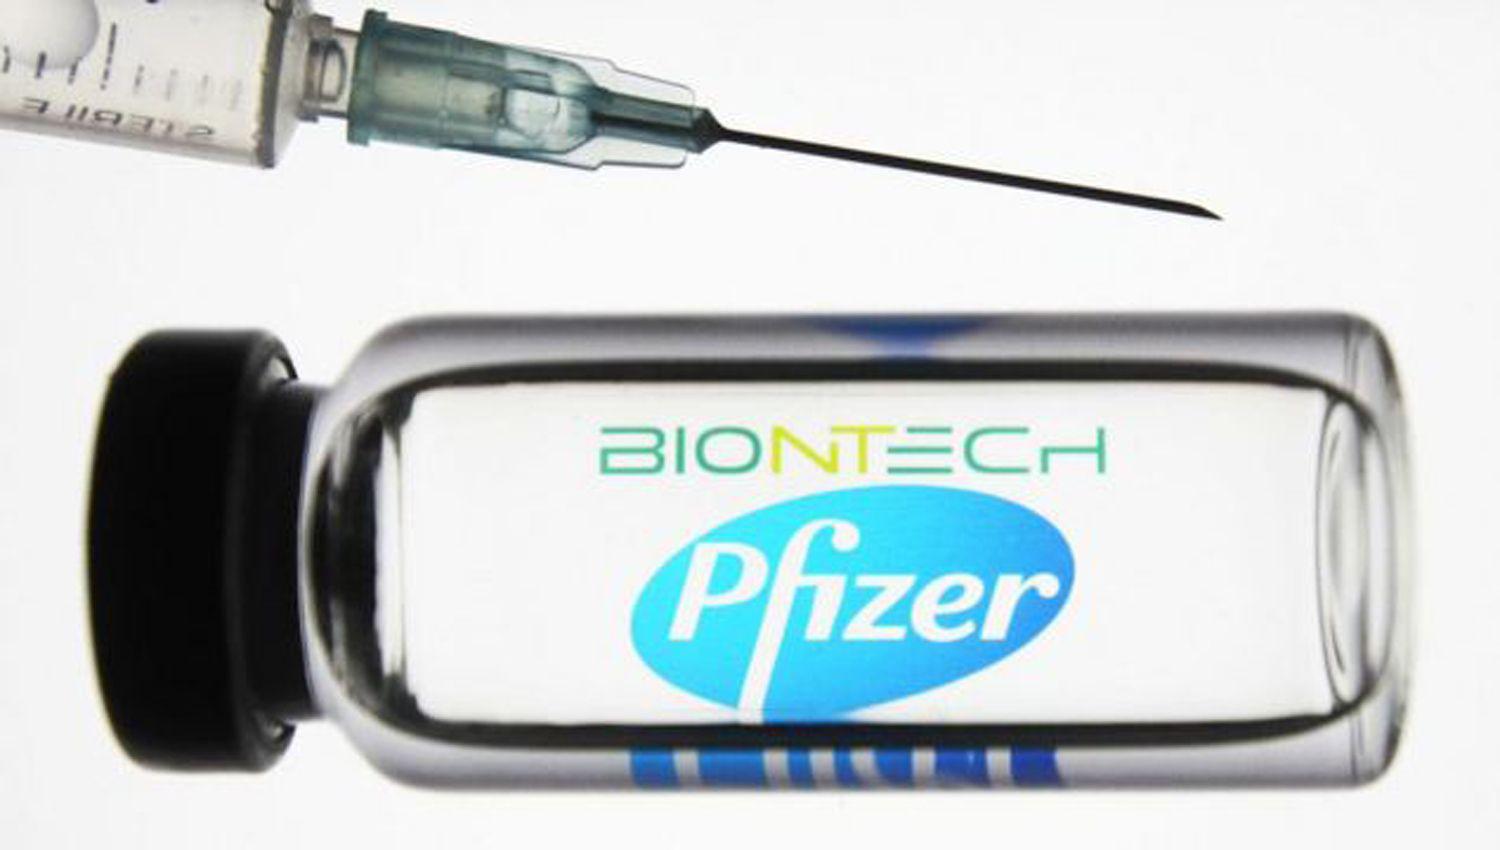 BioNTechPfizer prometen hasta 75 millones de vacunas adicionales para la Unioacuten Europea